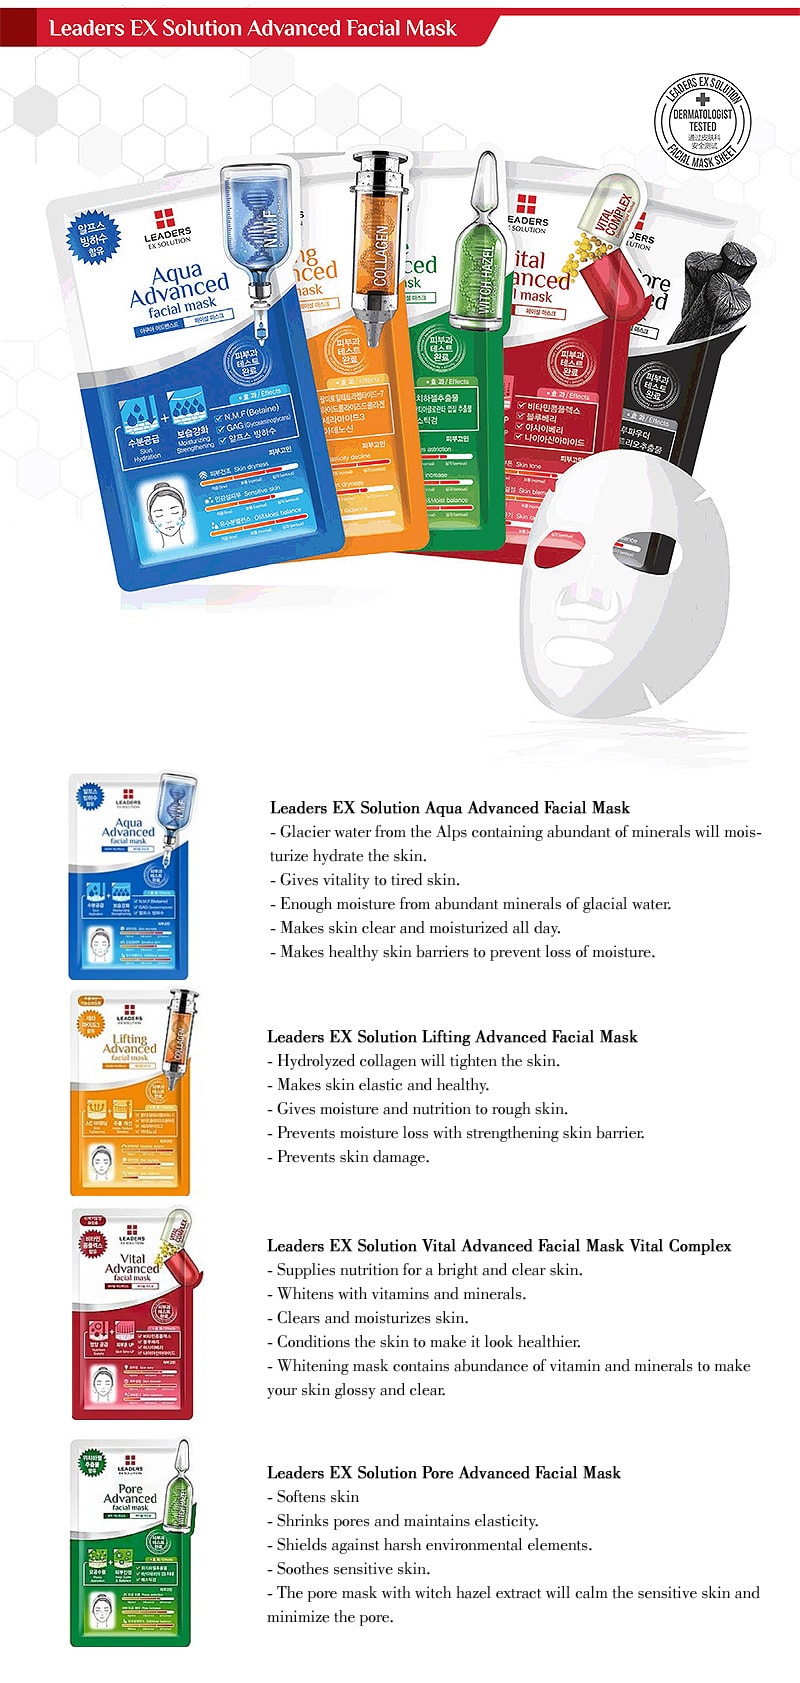 EX Solution Vital Advanced Facial Mask Vital Complex 10ea